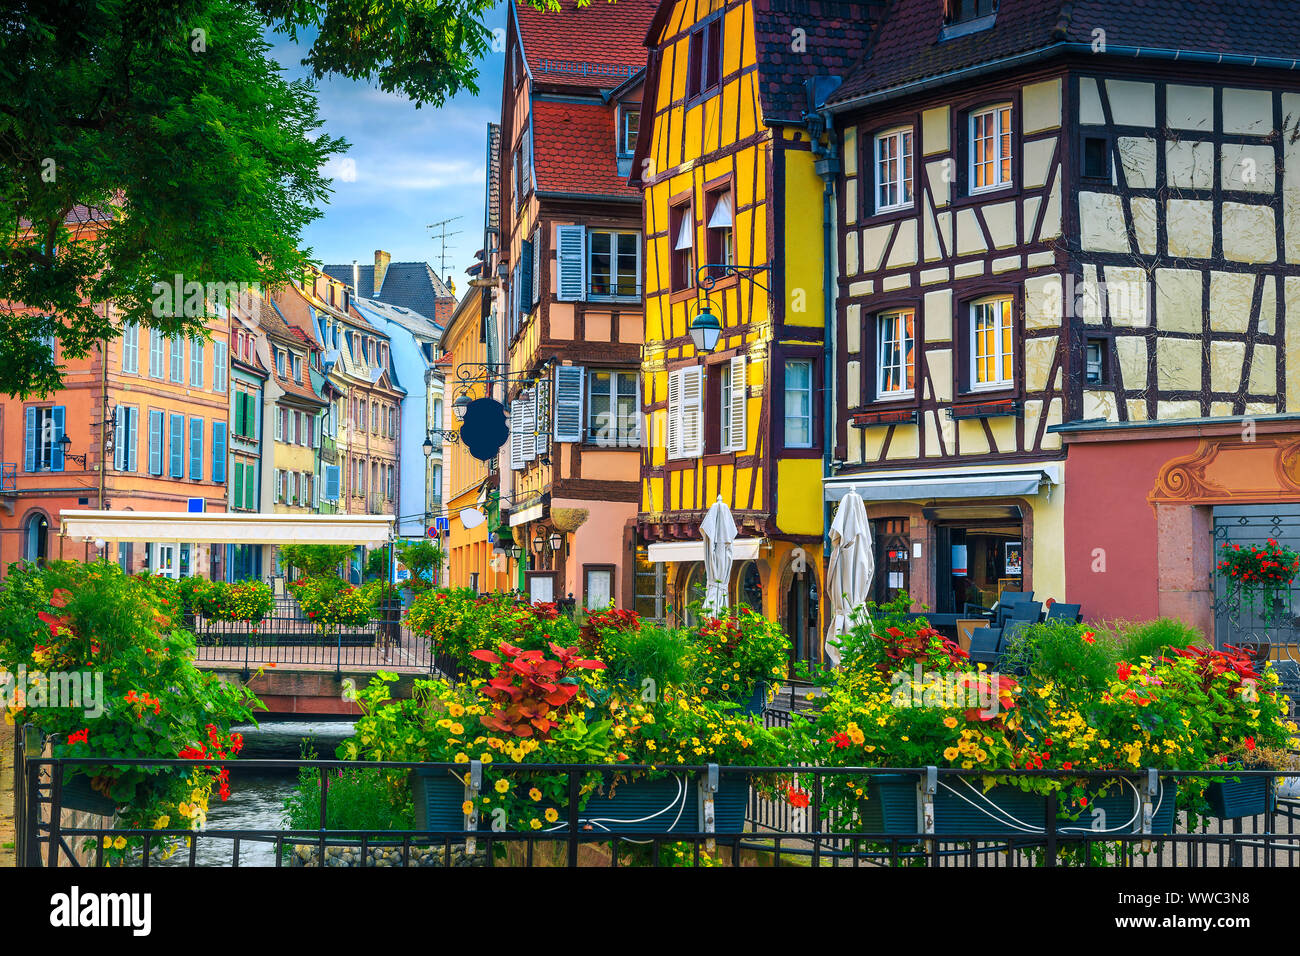 Lieu touristique populaire et de déplacement. Vue sur la rue pittoresque avec des bâtiments colorés et des fleurs, Colmar, France, Europe Banque D'Images